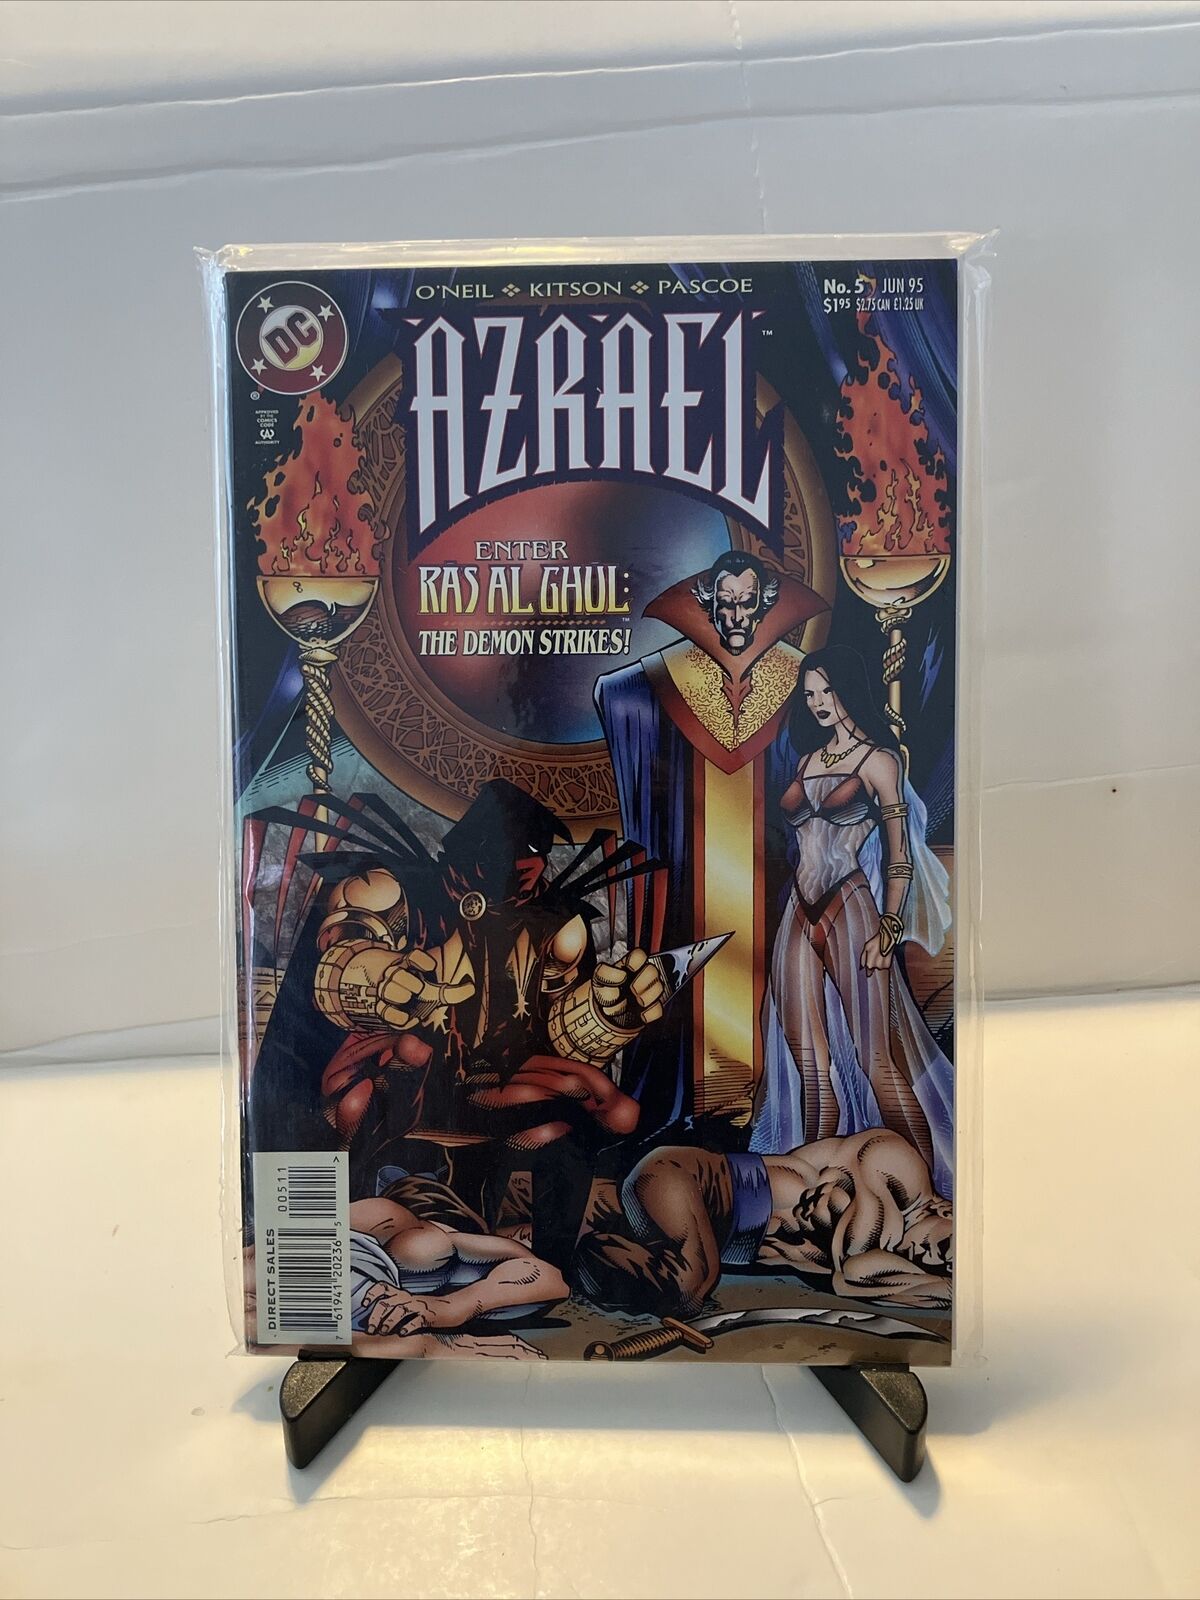 Azrael  #5, Vol. 1 (1995-1998) DC Comics, Enter Ras Al Ghul